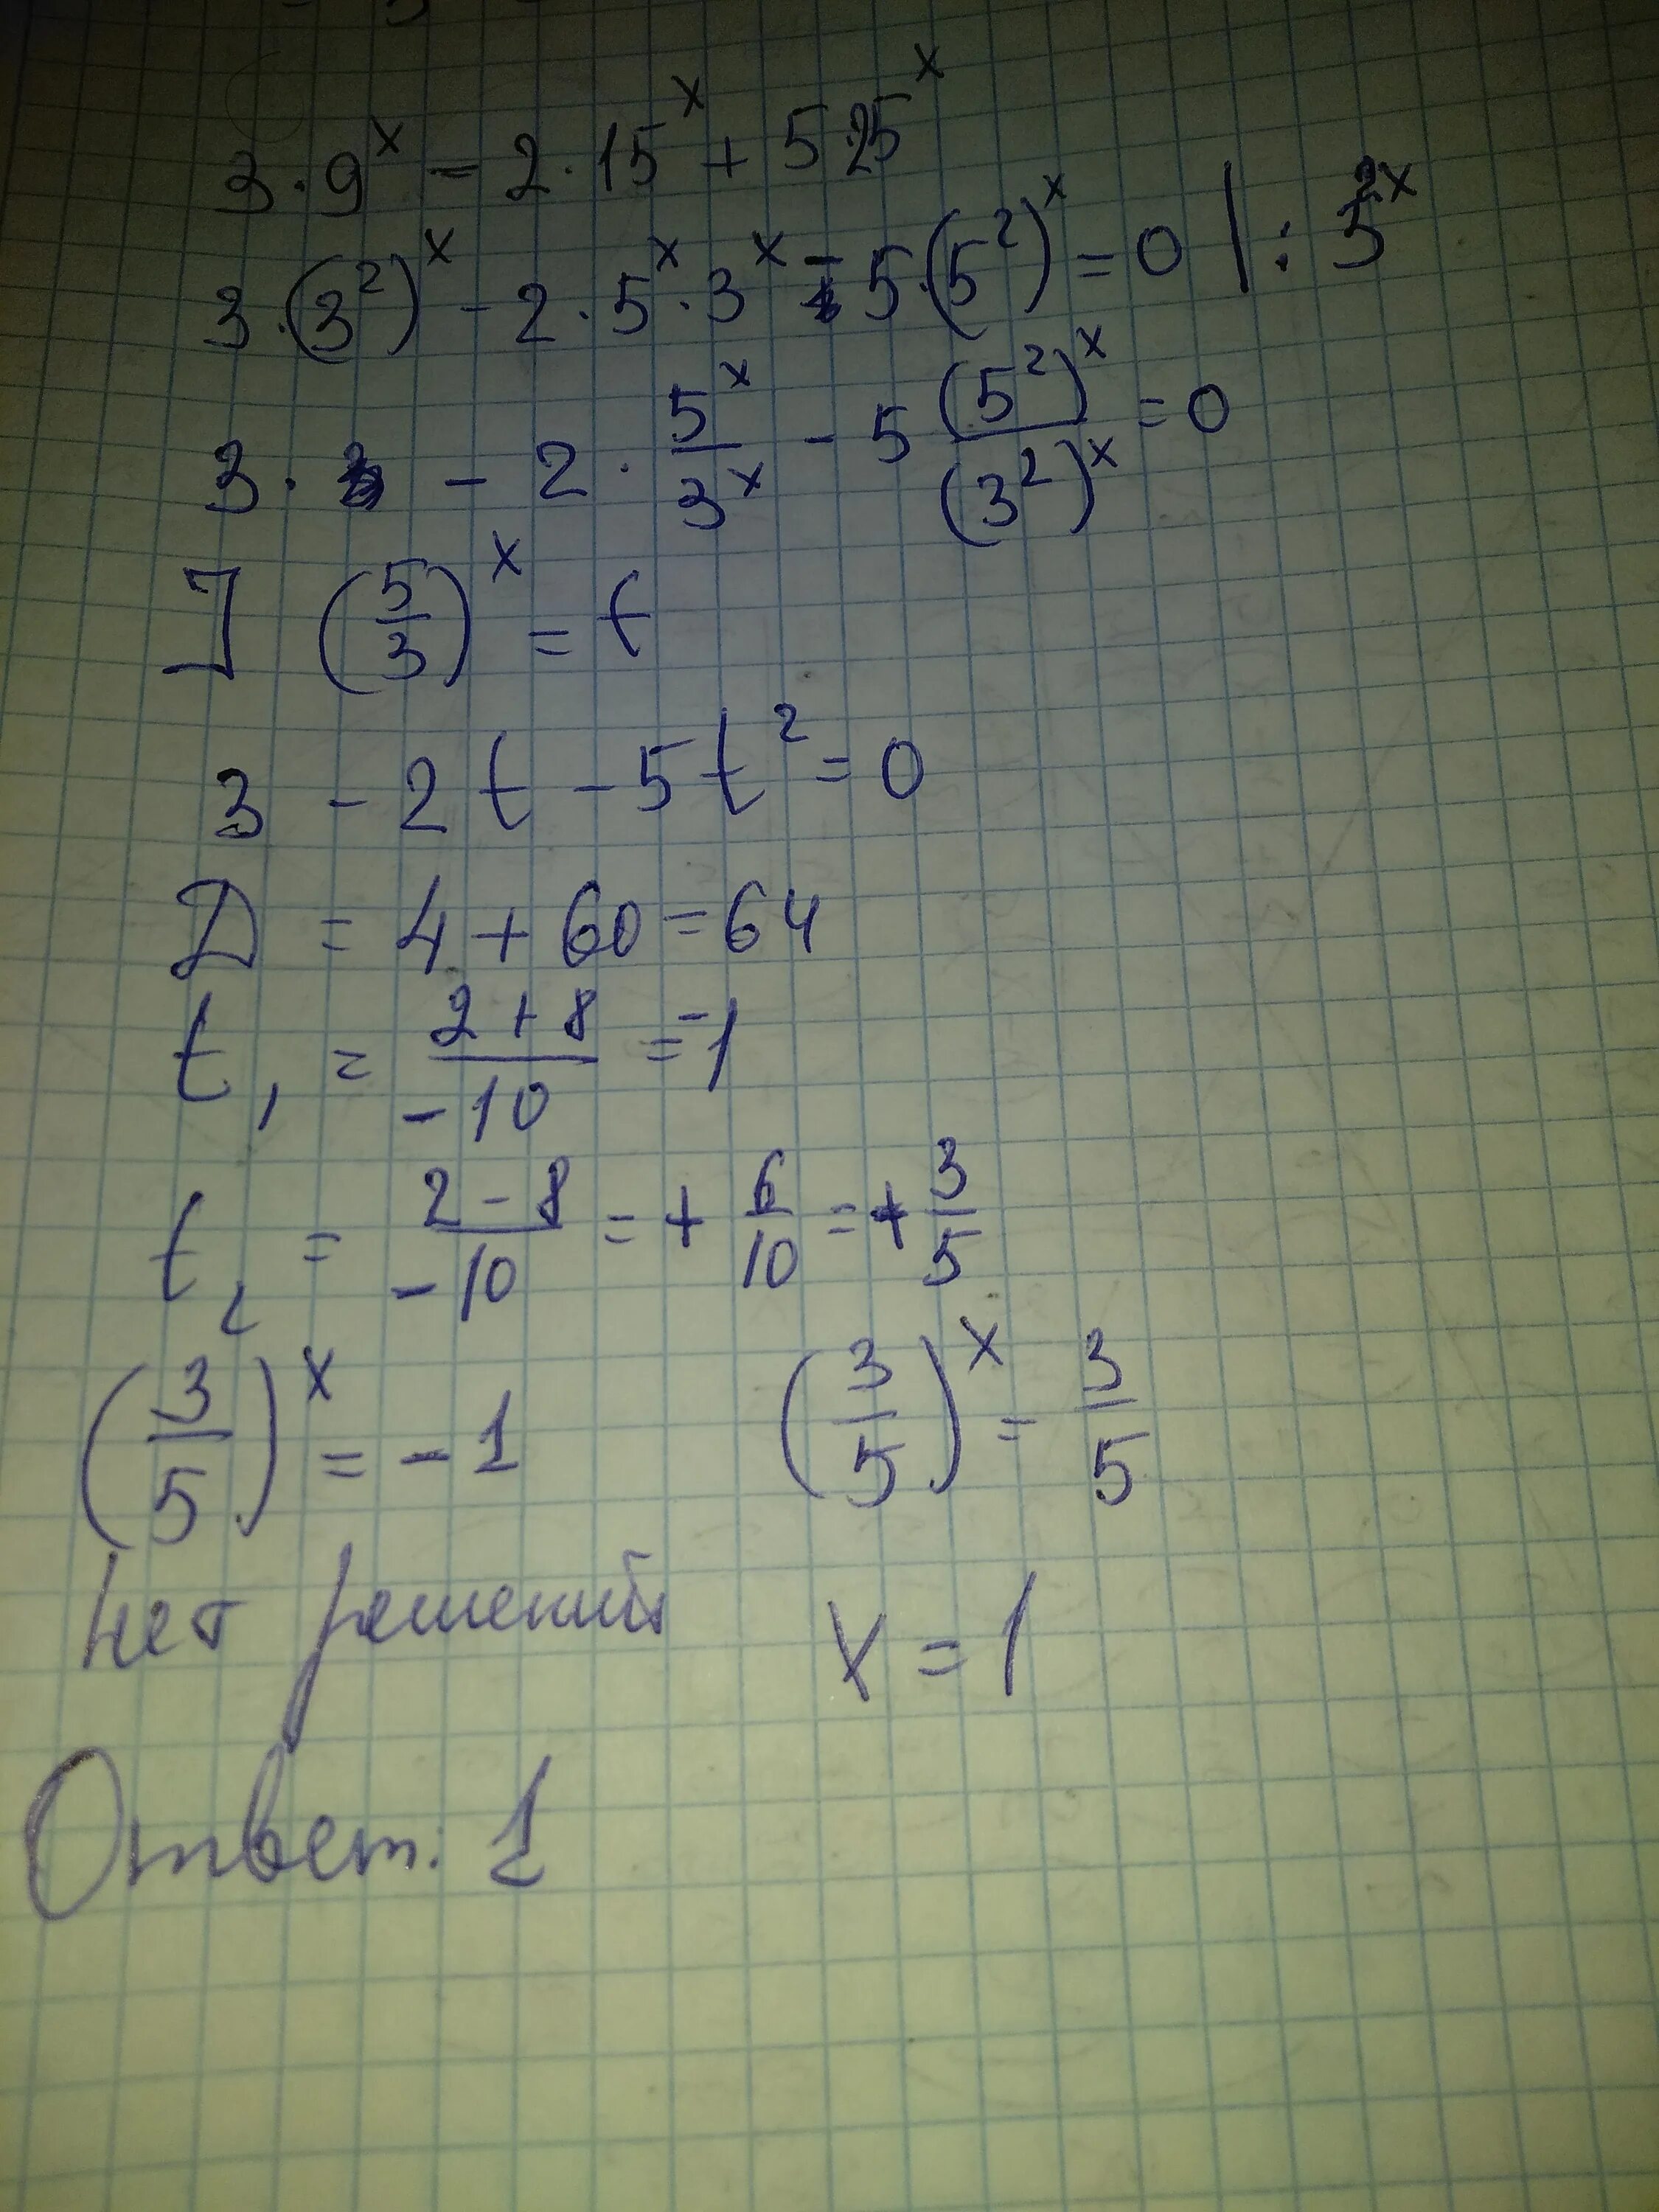 X/3+X/2=15. 5x 5 - 15x 3. [5x>15, x<a. 15x2-25x2/5x2. 25 2x 9 0